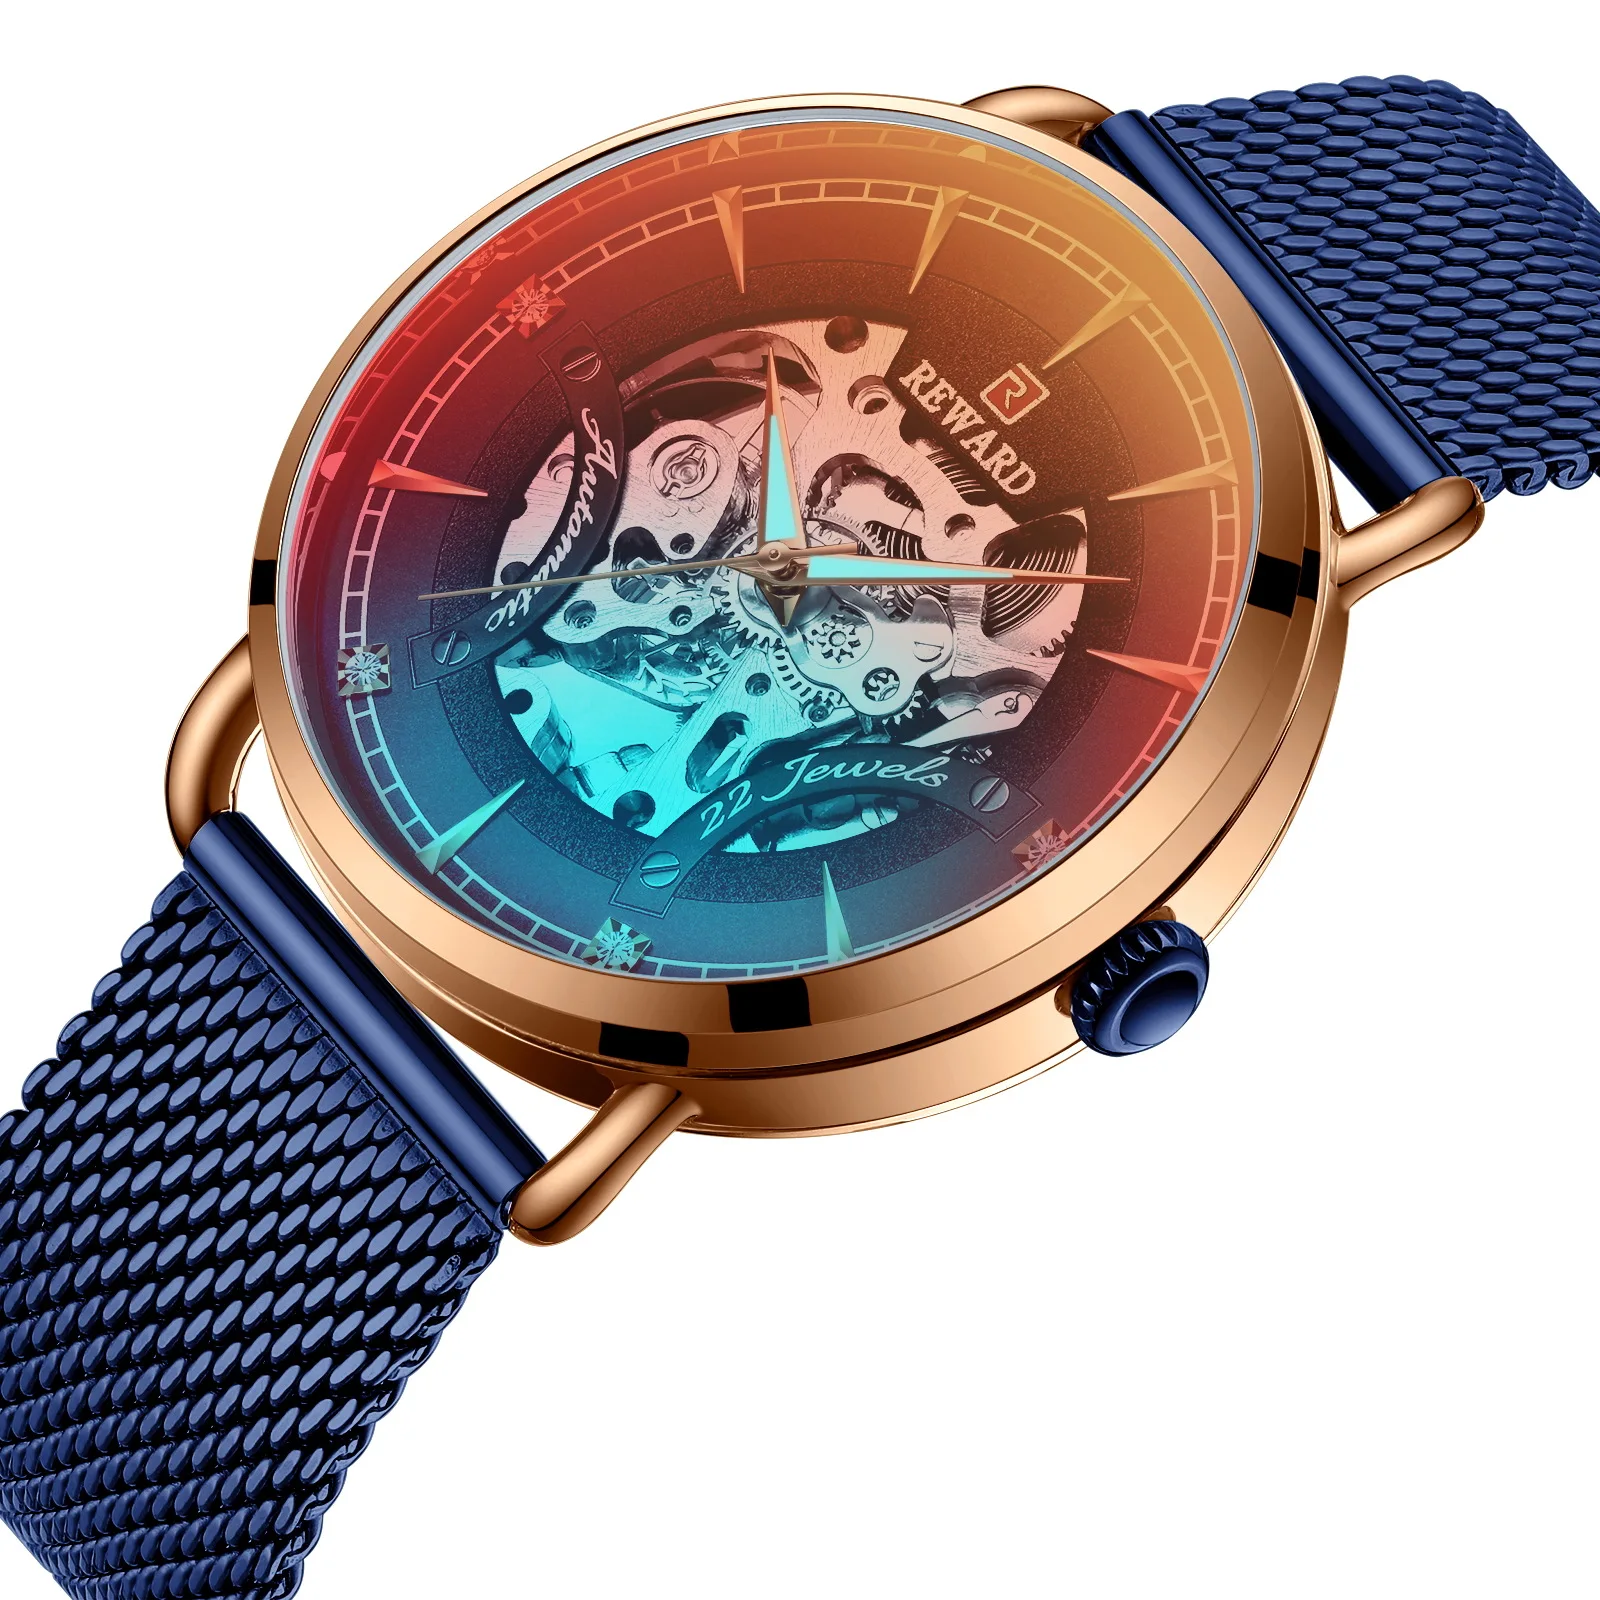 Reward automatic mechanical watch men's watch luxury men watch hollow mechanical watch waterproof luminous Japanese movement